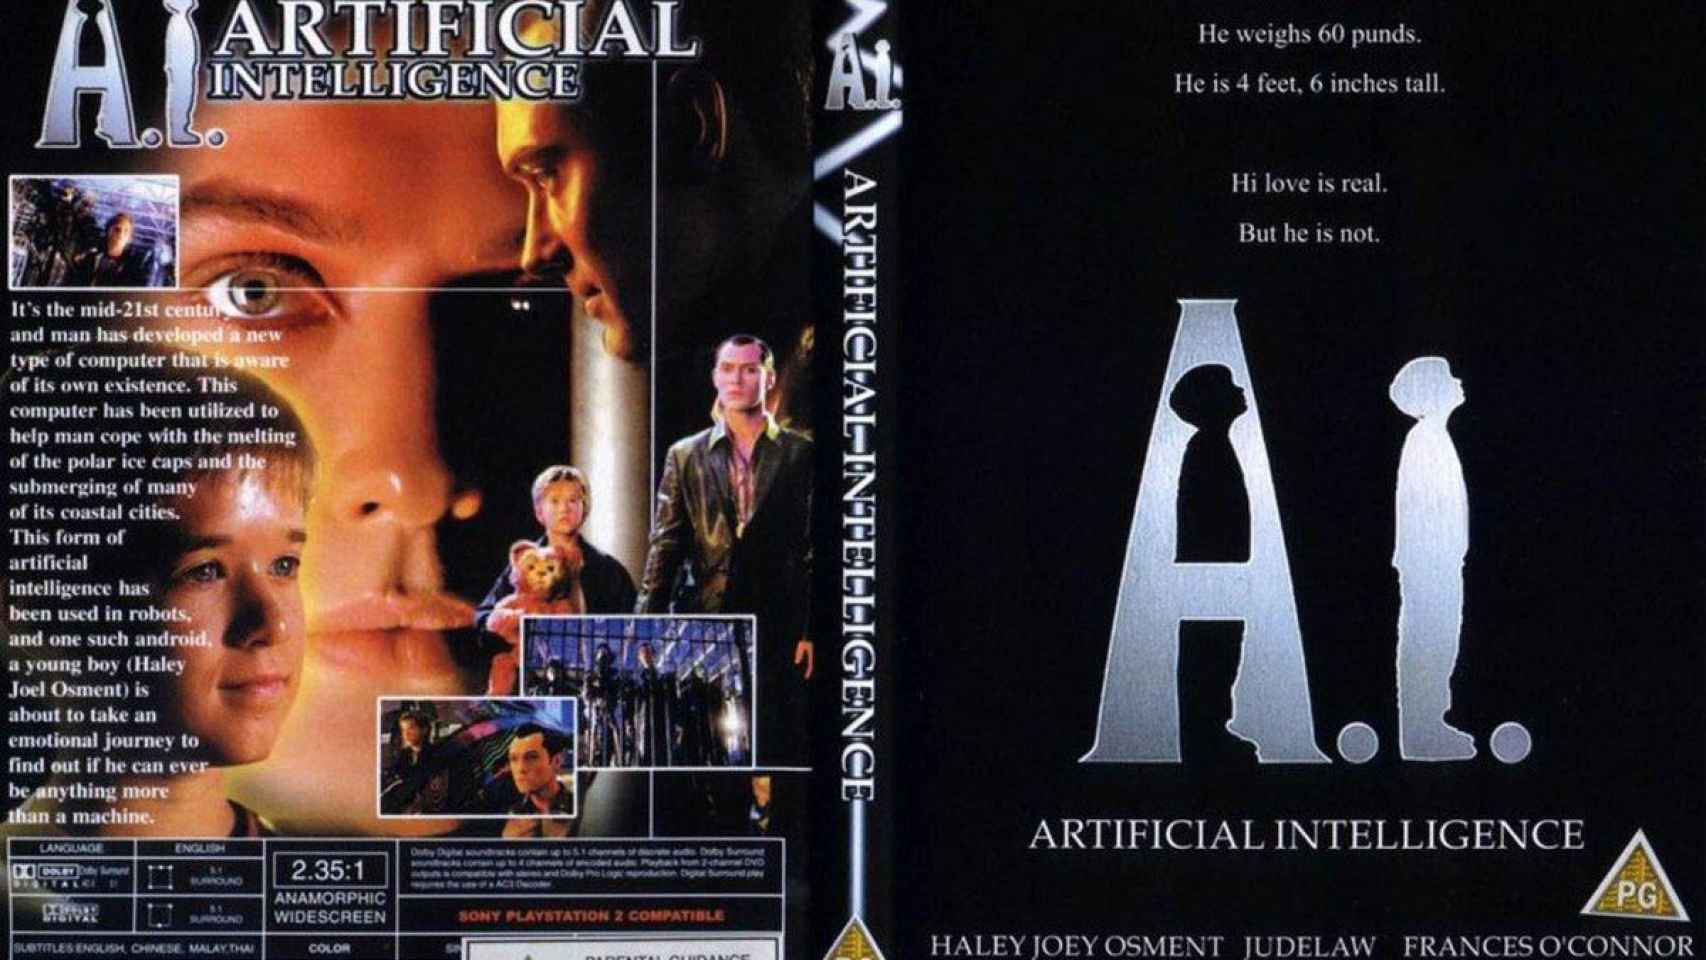 La Inteligencia Artificial será una de las tendencias en el Mobile 2018. En la imagen, cartel promocional de la película 'Artificial Intelligence', dirigida en 2001 por Steven Spielberg / Archivo